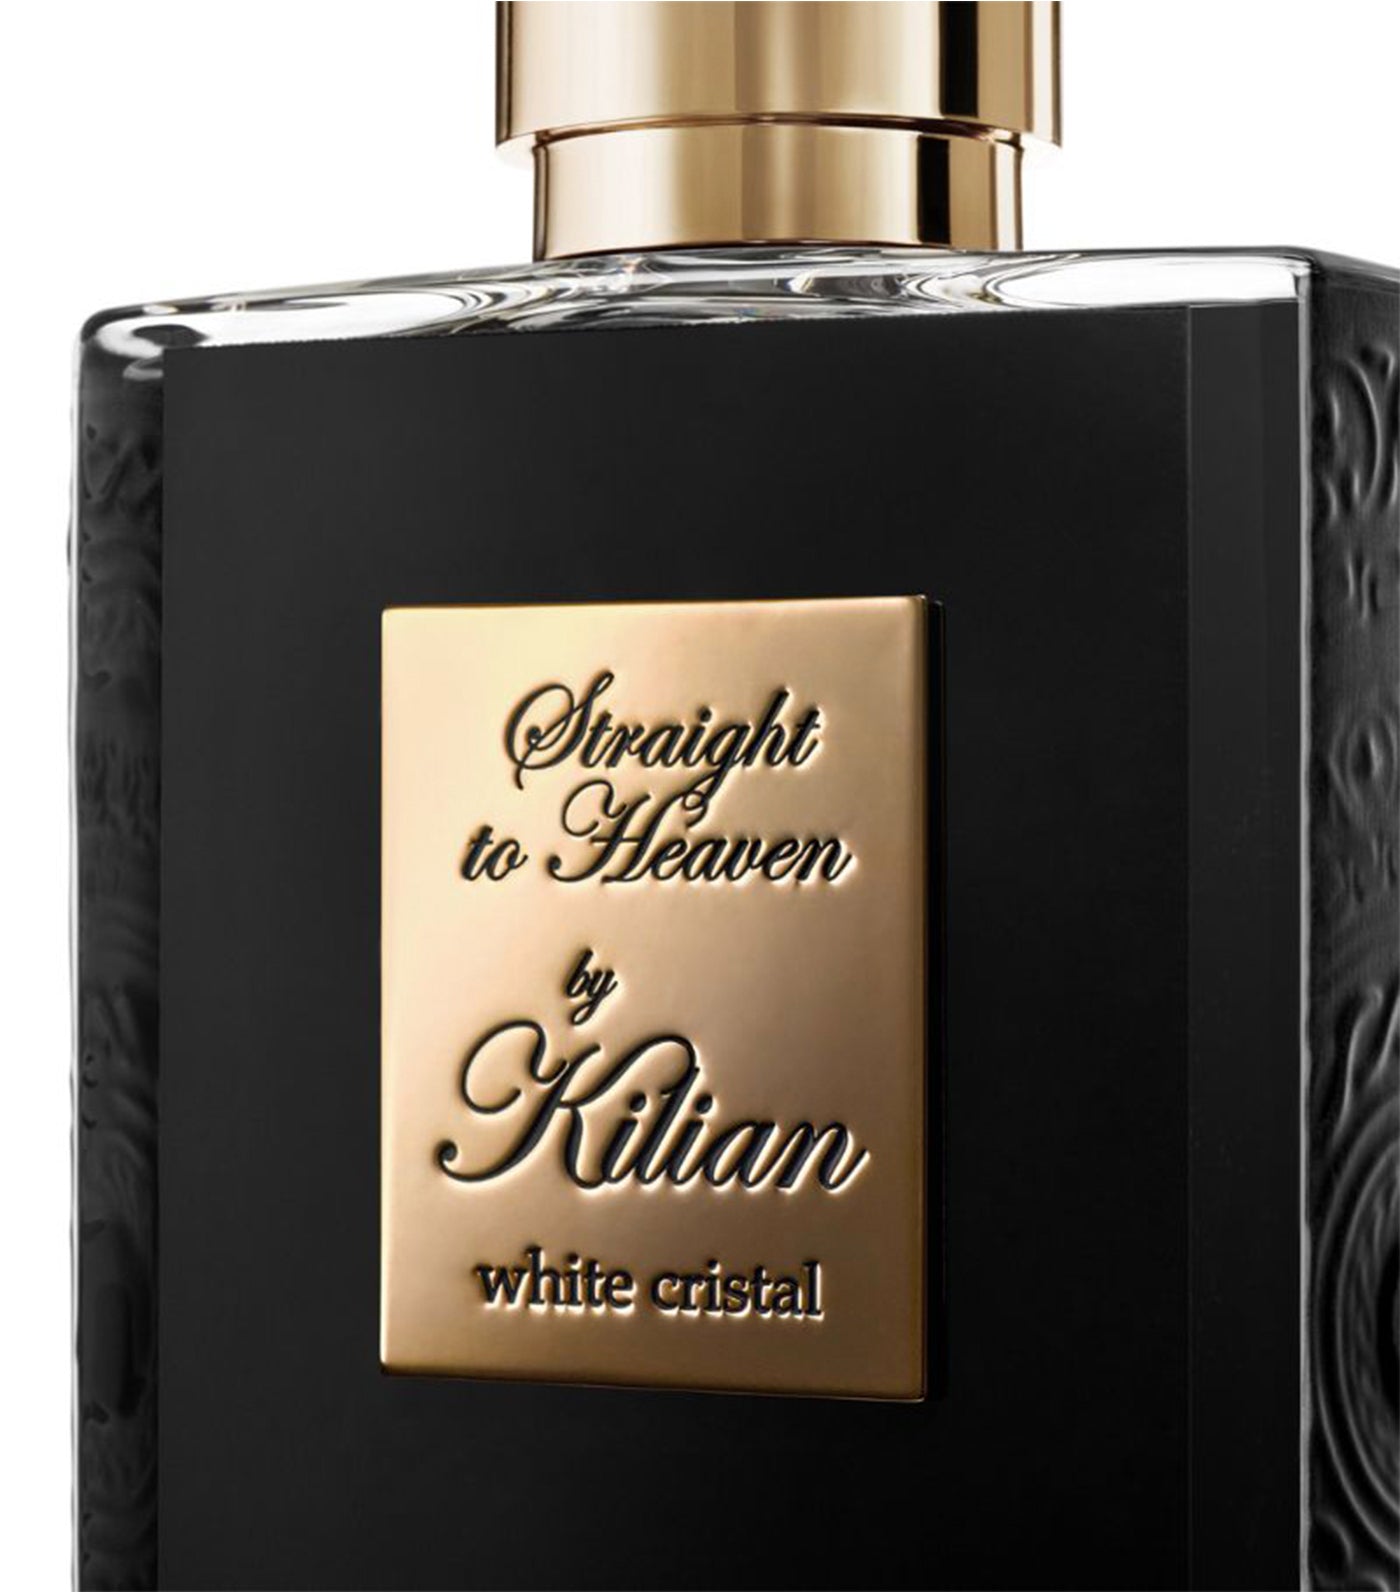 Kilian Paris Straight to Heaven, white cristal Eau de Parfum